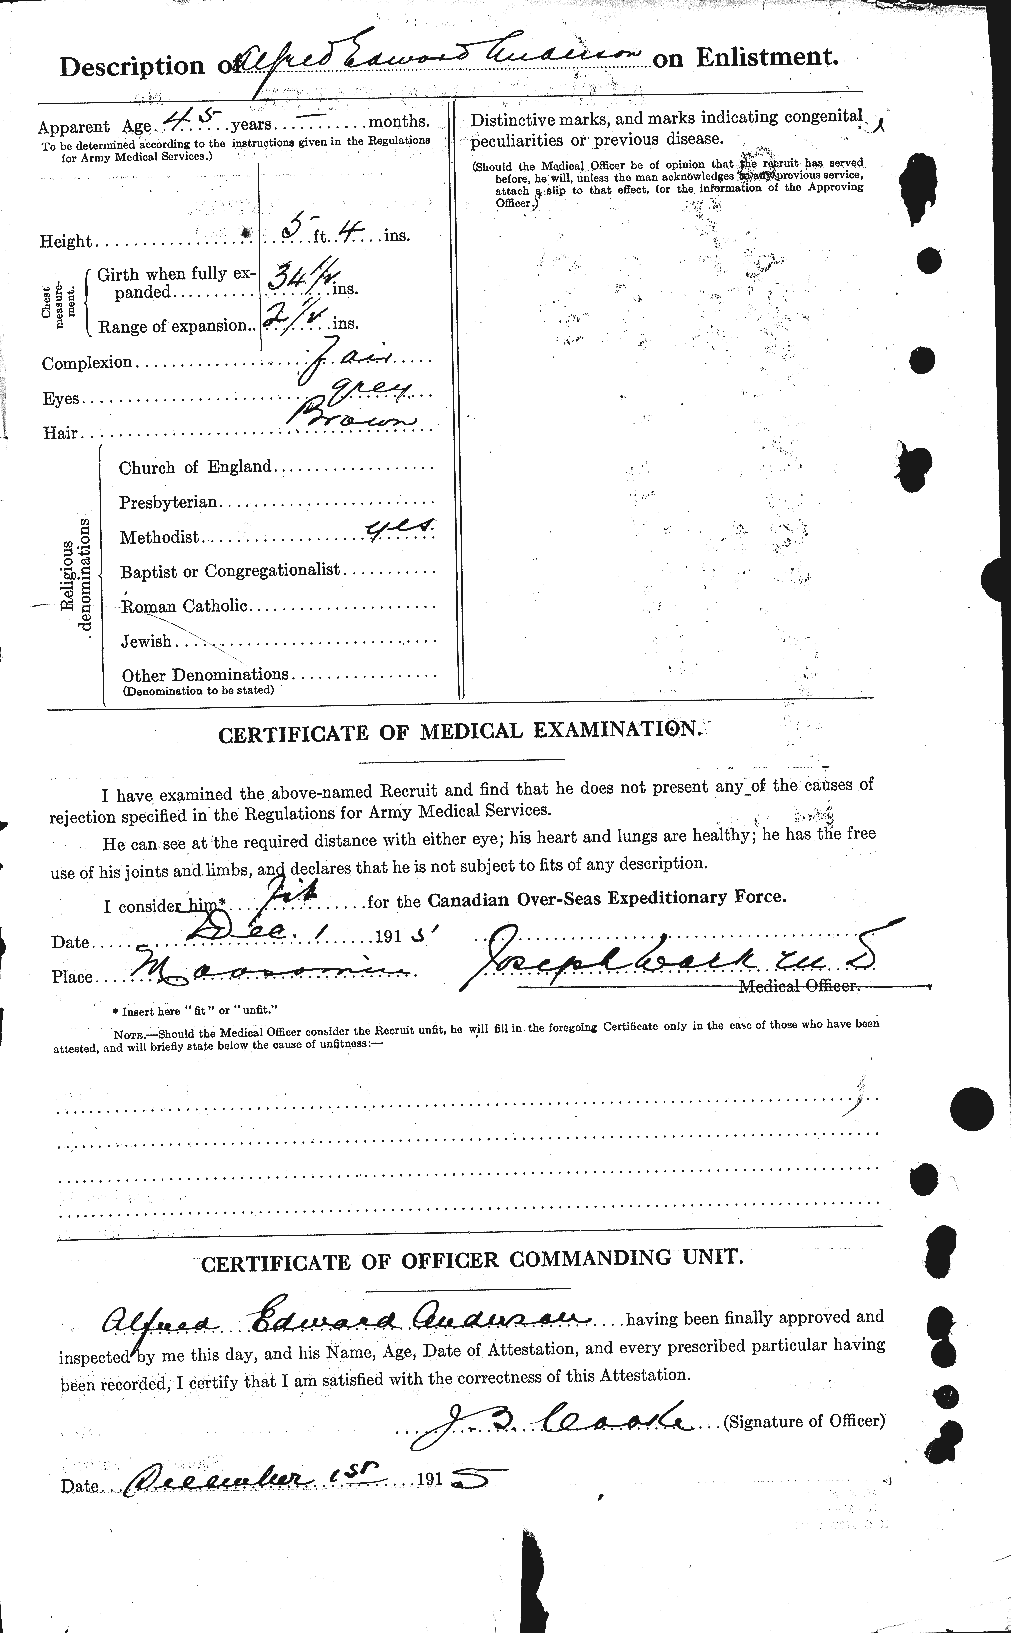 Dossiers du Personnel de la Première Guerre mondiale - CEC 209455b